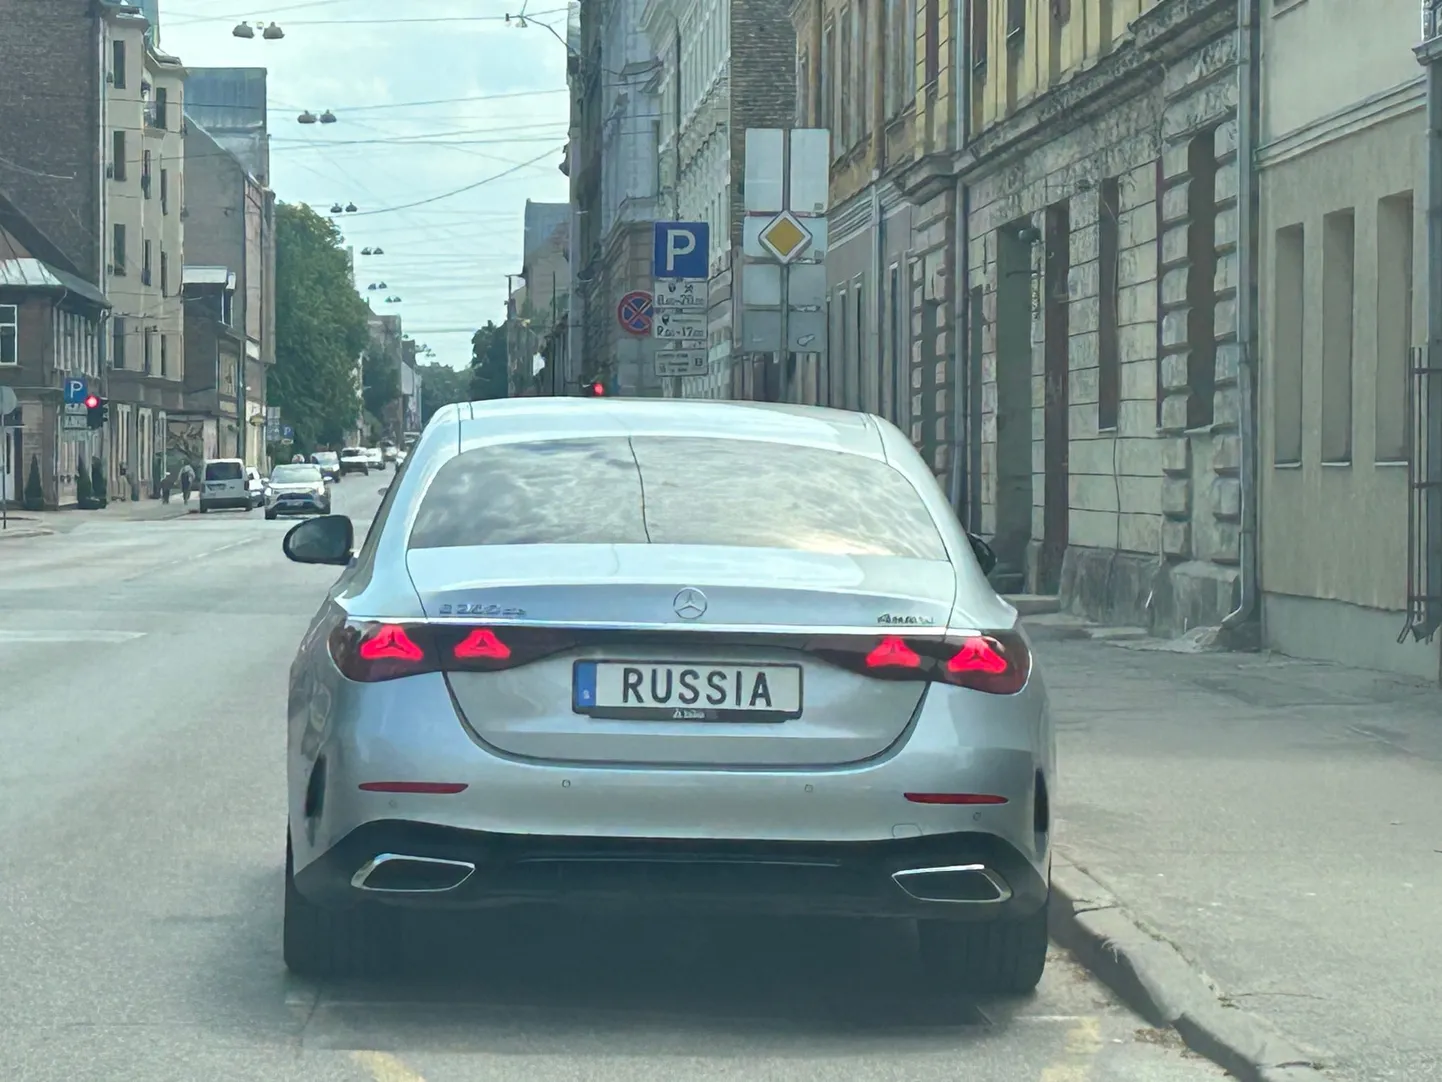 В Риге замечен автомобиль с надписью RUSSIA. Он зарегистрирован в Швеции